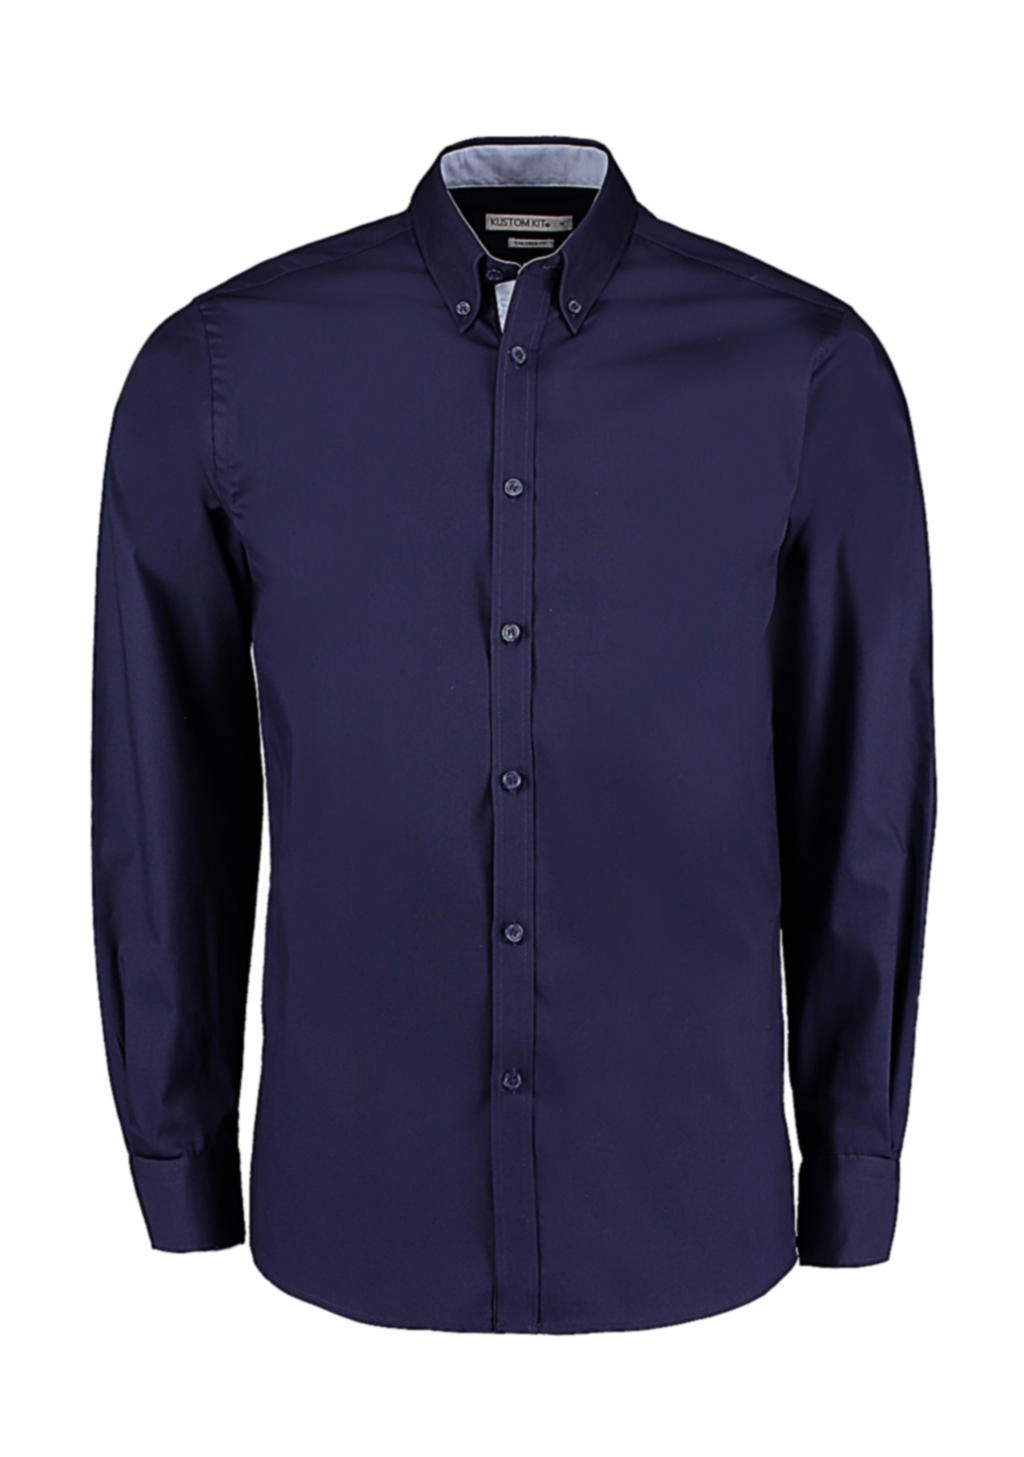 Tailored Fit Premium Contrast Oxford Shirt zum Besticken und Bedrucken in der Farbe Navy/Light Blue mit Ihren Logo, Schriftzug oder Motiv.